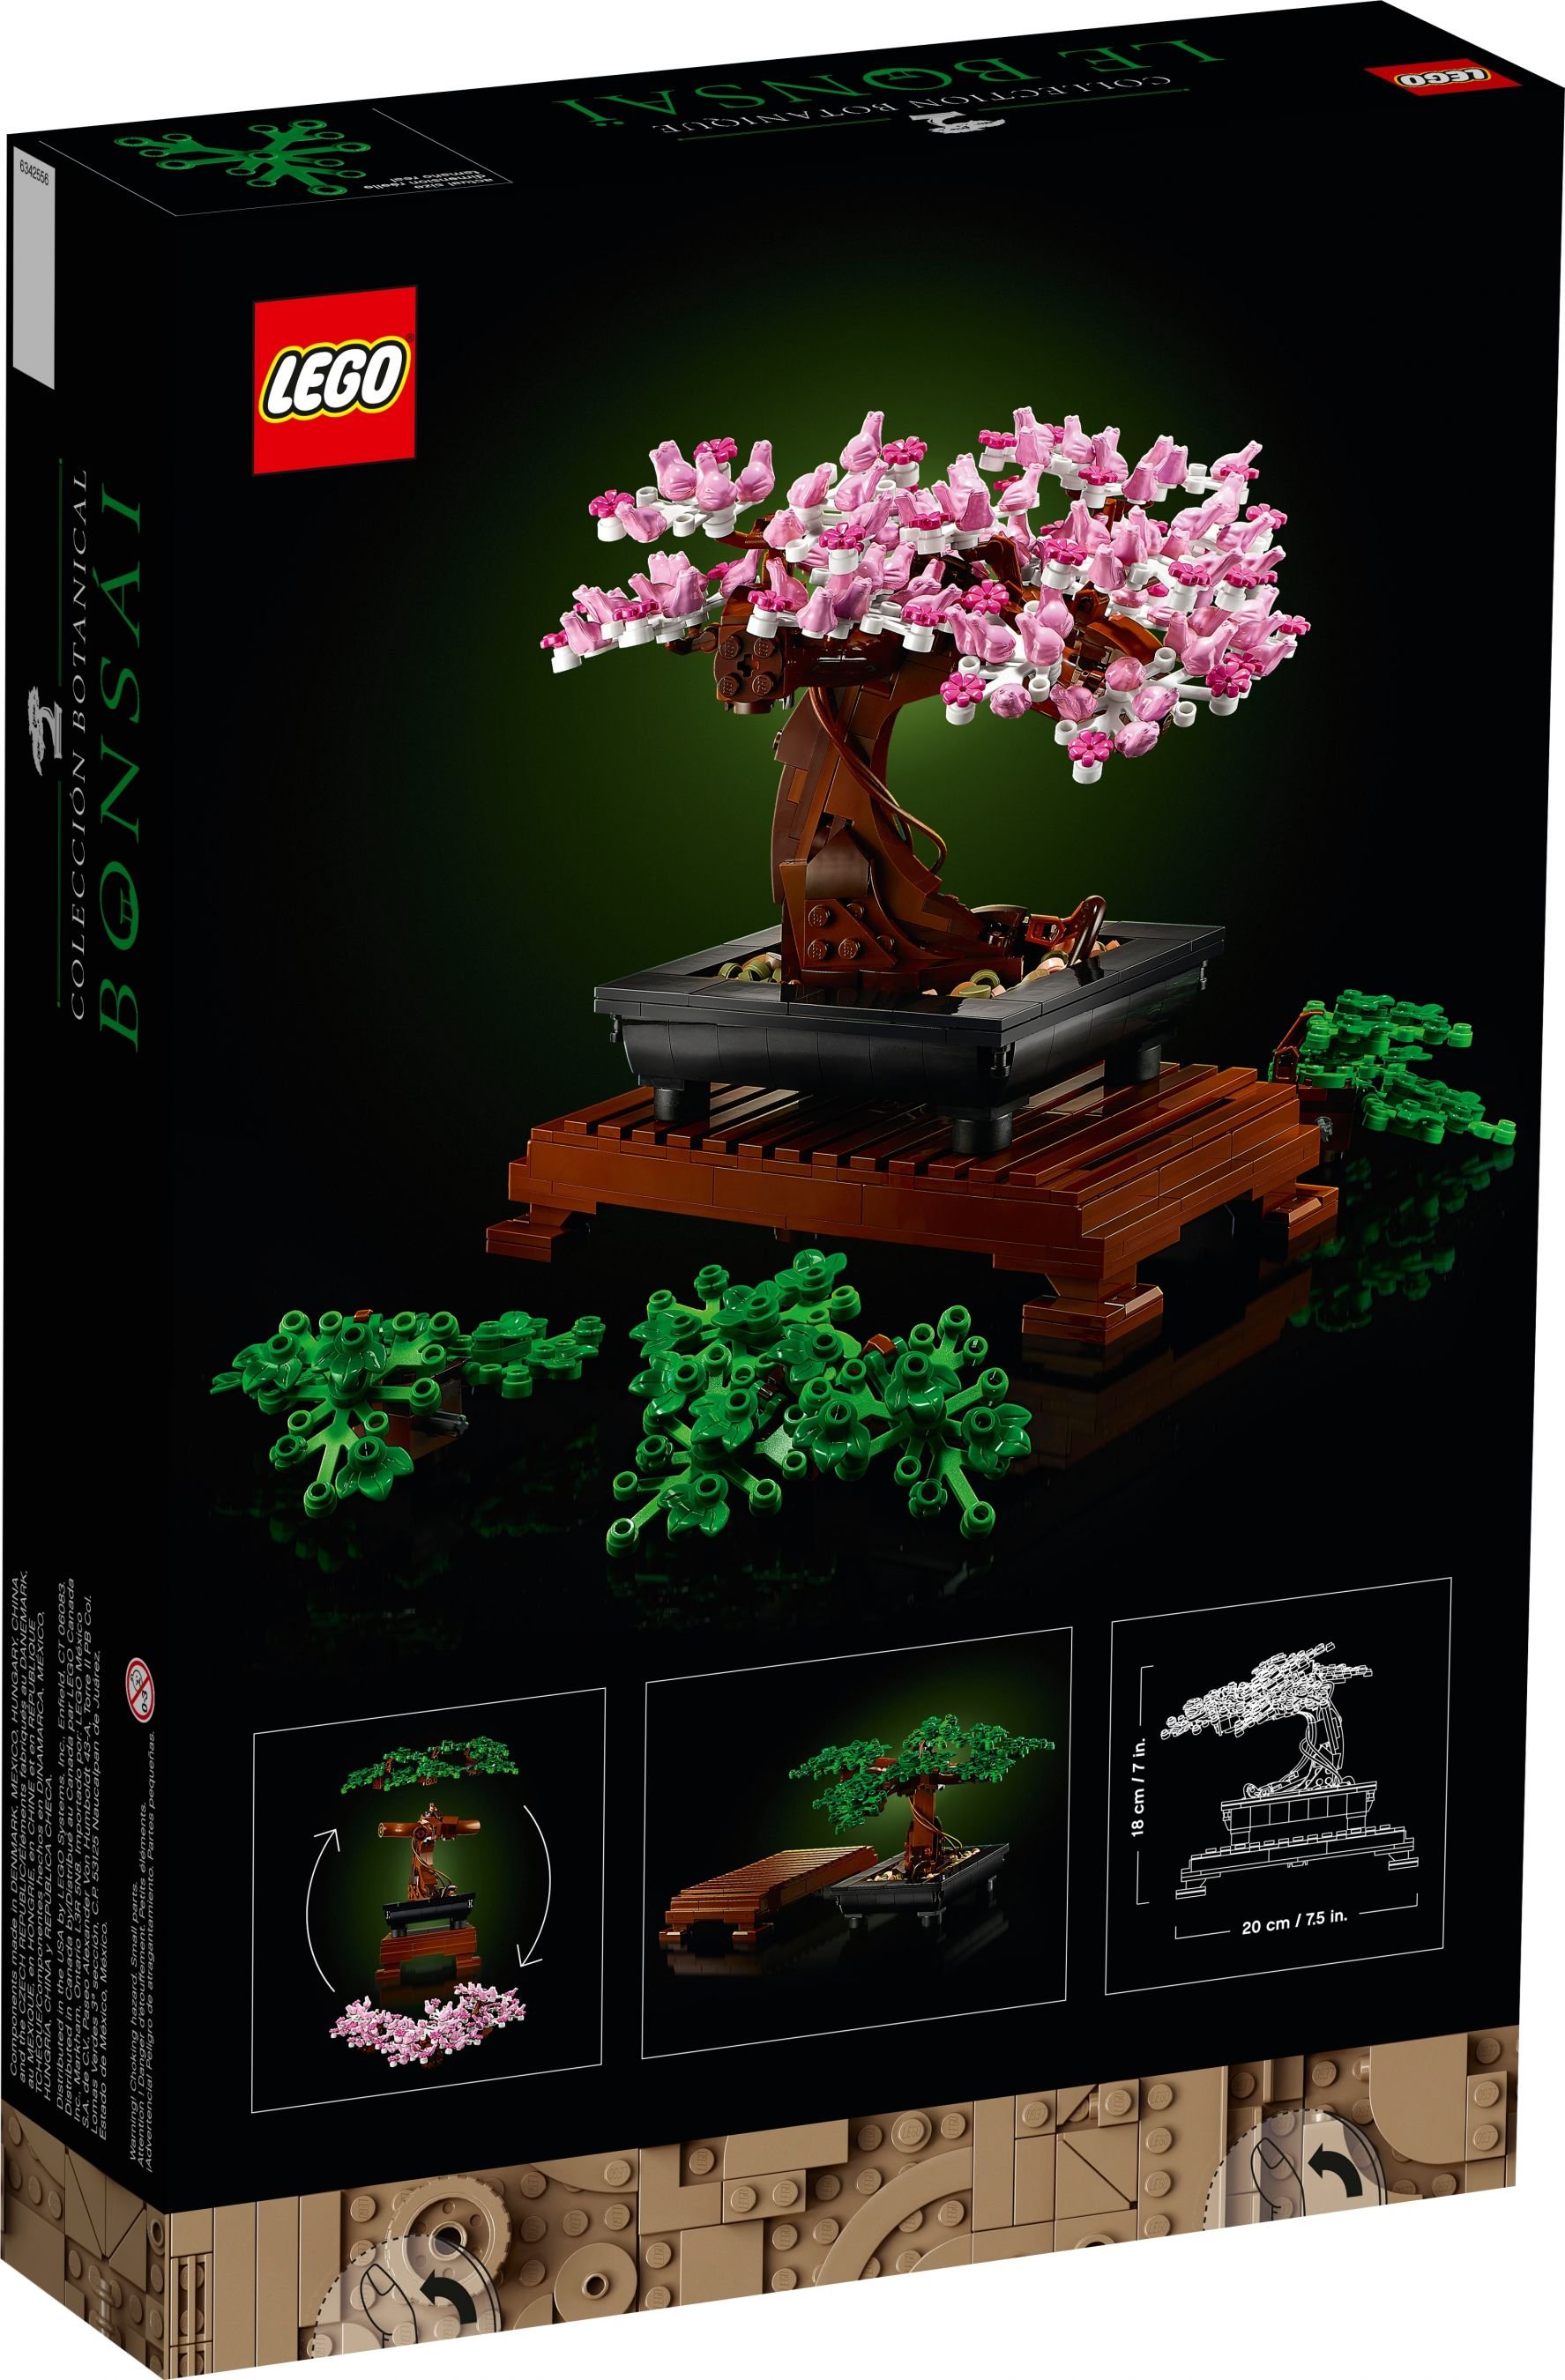 LEGO Advanced Models 10281 Bonsai Baum LEGO_10281_alt7.jpg